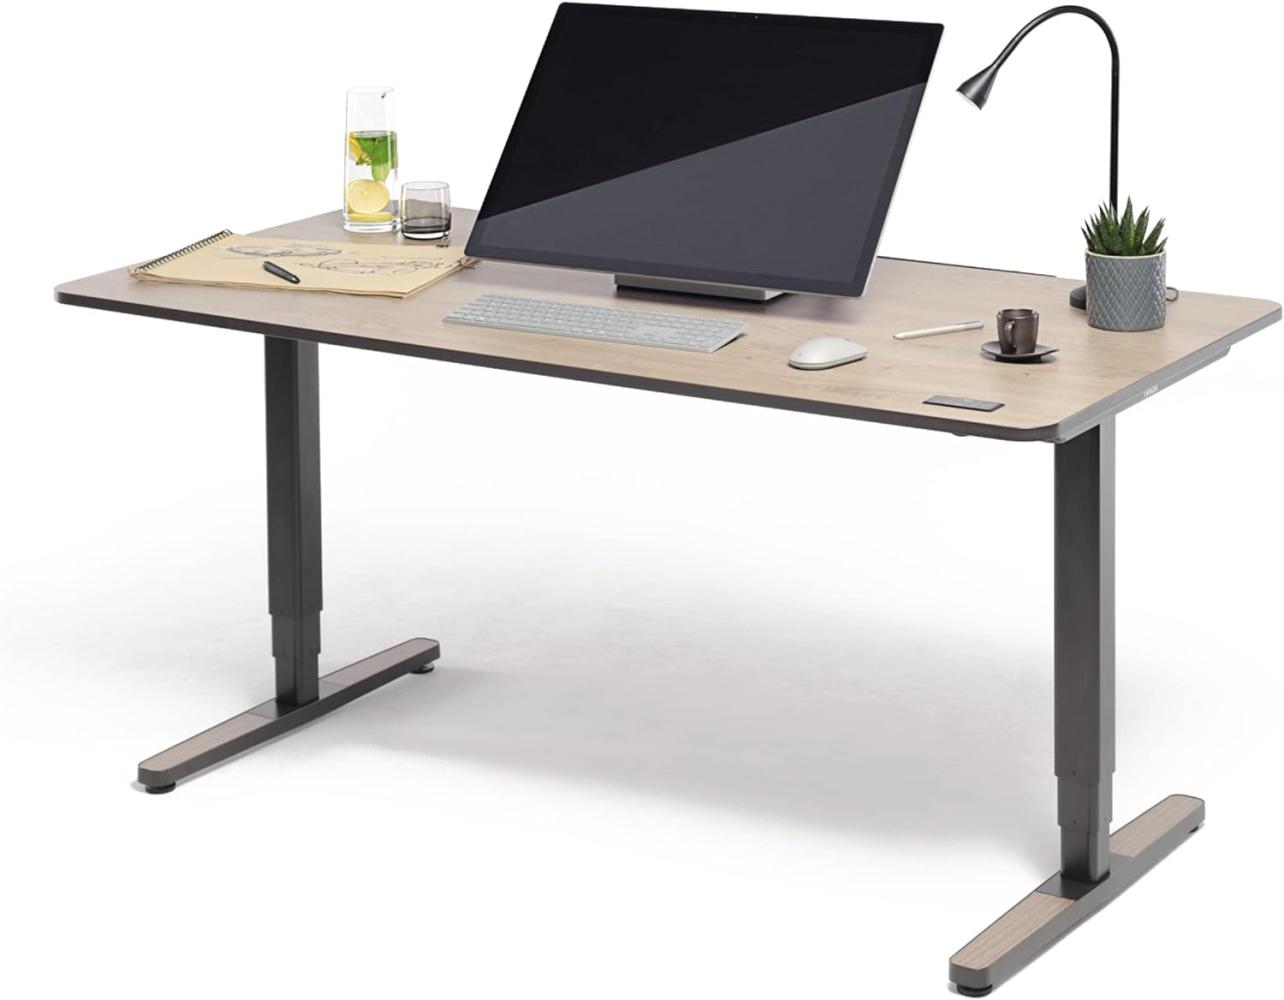 Yaasa Desk Pro II Elektrisch Höhenverstellbarer Schreibtisch, 160 x 80 cm, Eiche, mit Speicherfunktion und Kollisionssensor Bild 1